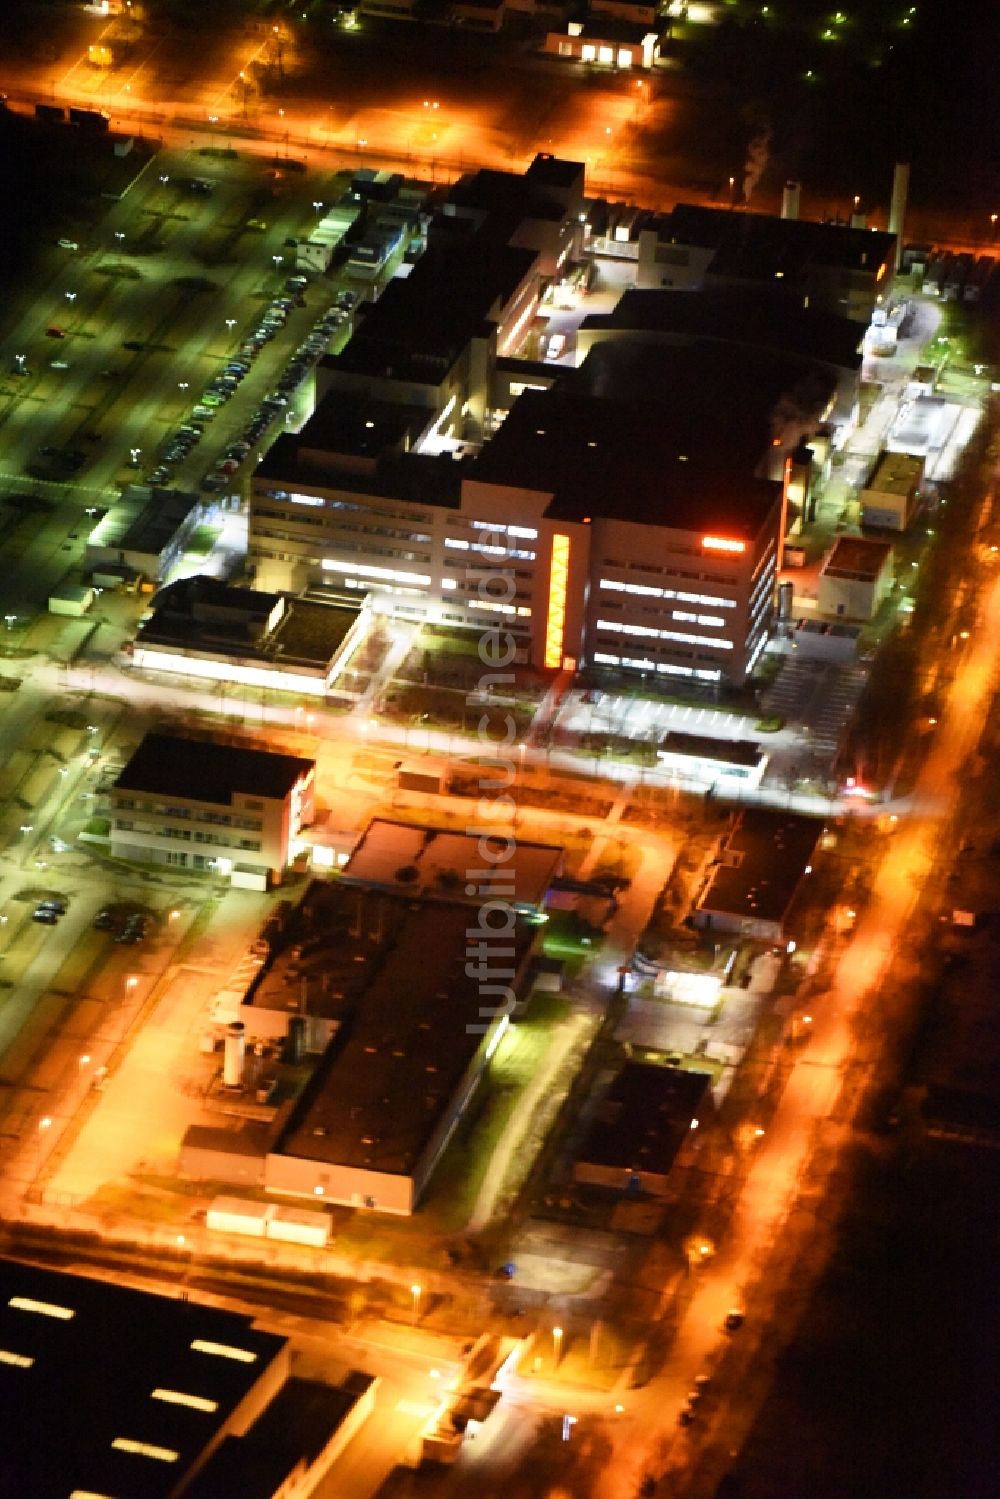 Regensburg bei Nacht aus der Vogelperspektive: Nachtluftbild vom Werksgelände der OSRAM Opto Semiconductors GmbH in Regensburg im Bundesland Bayern